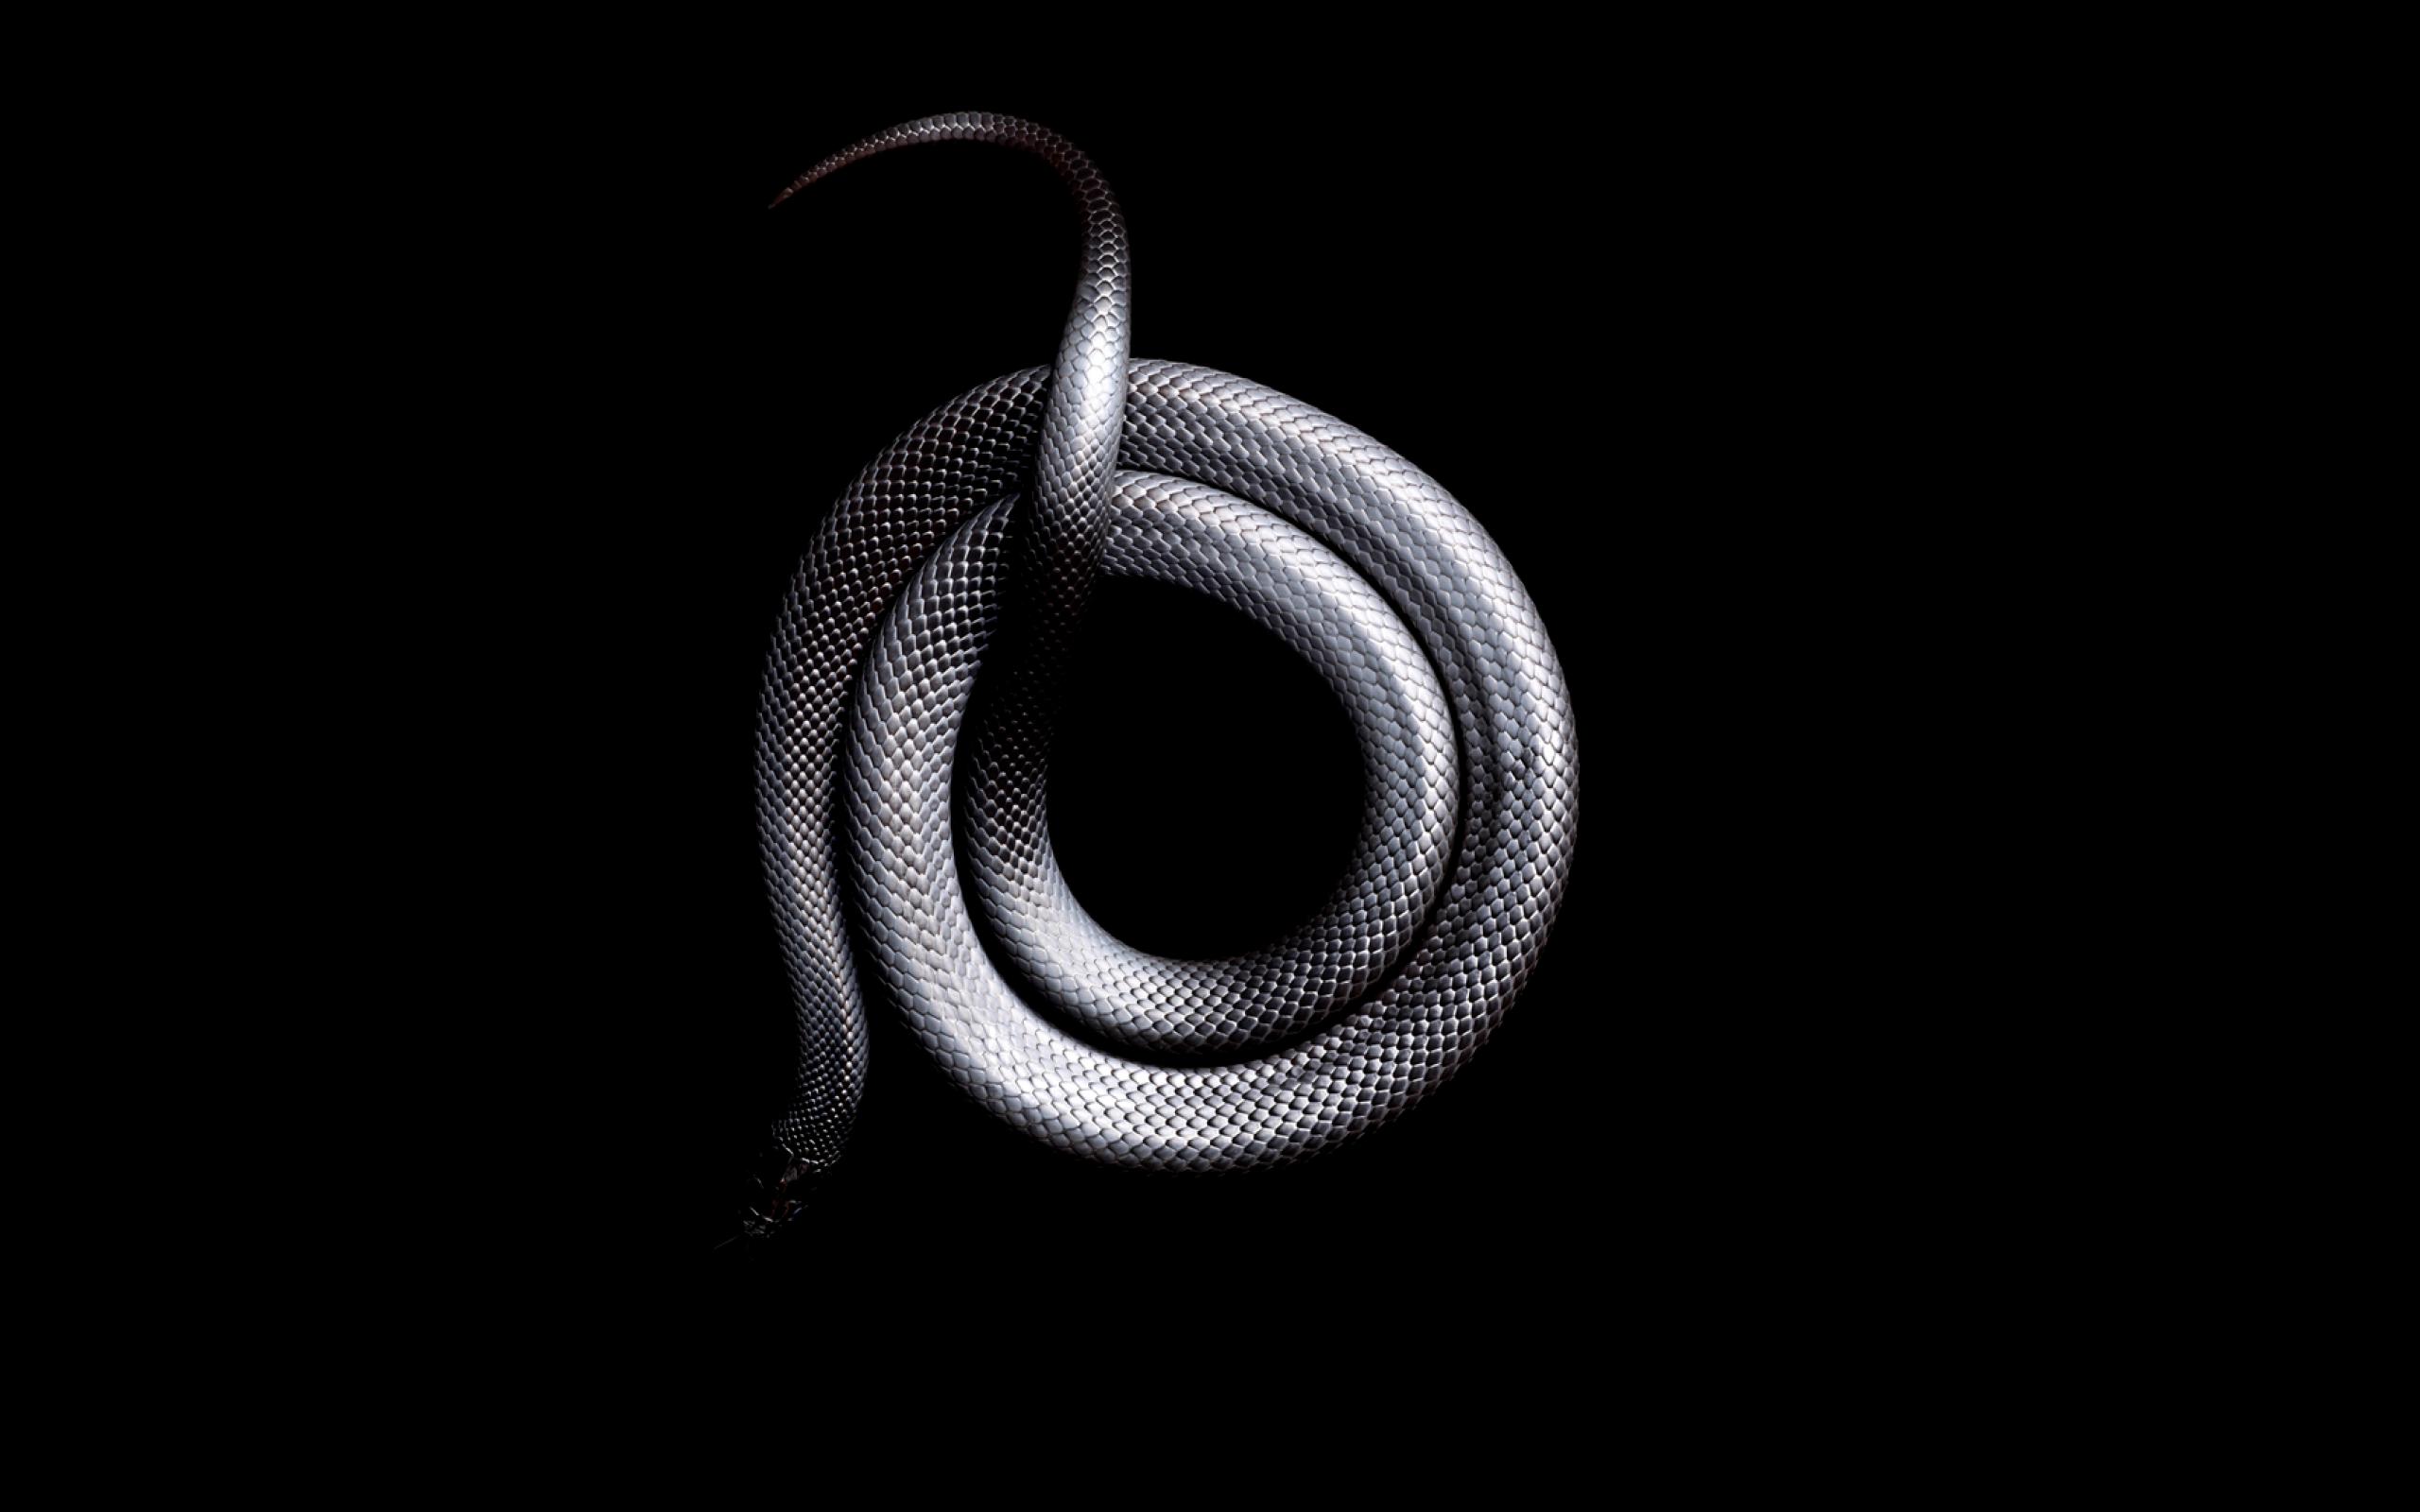 Змея на черном фоне